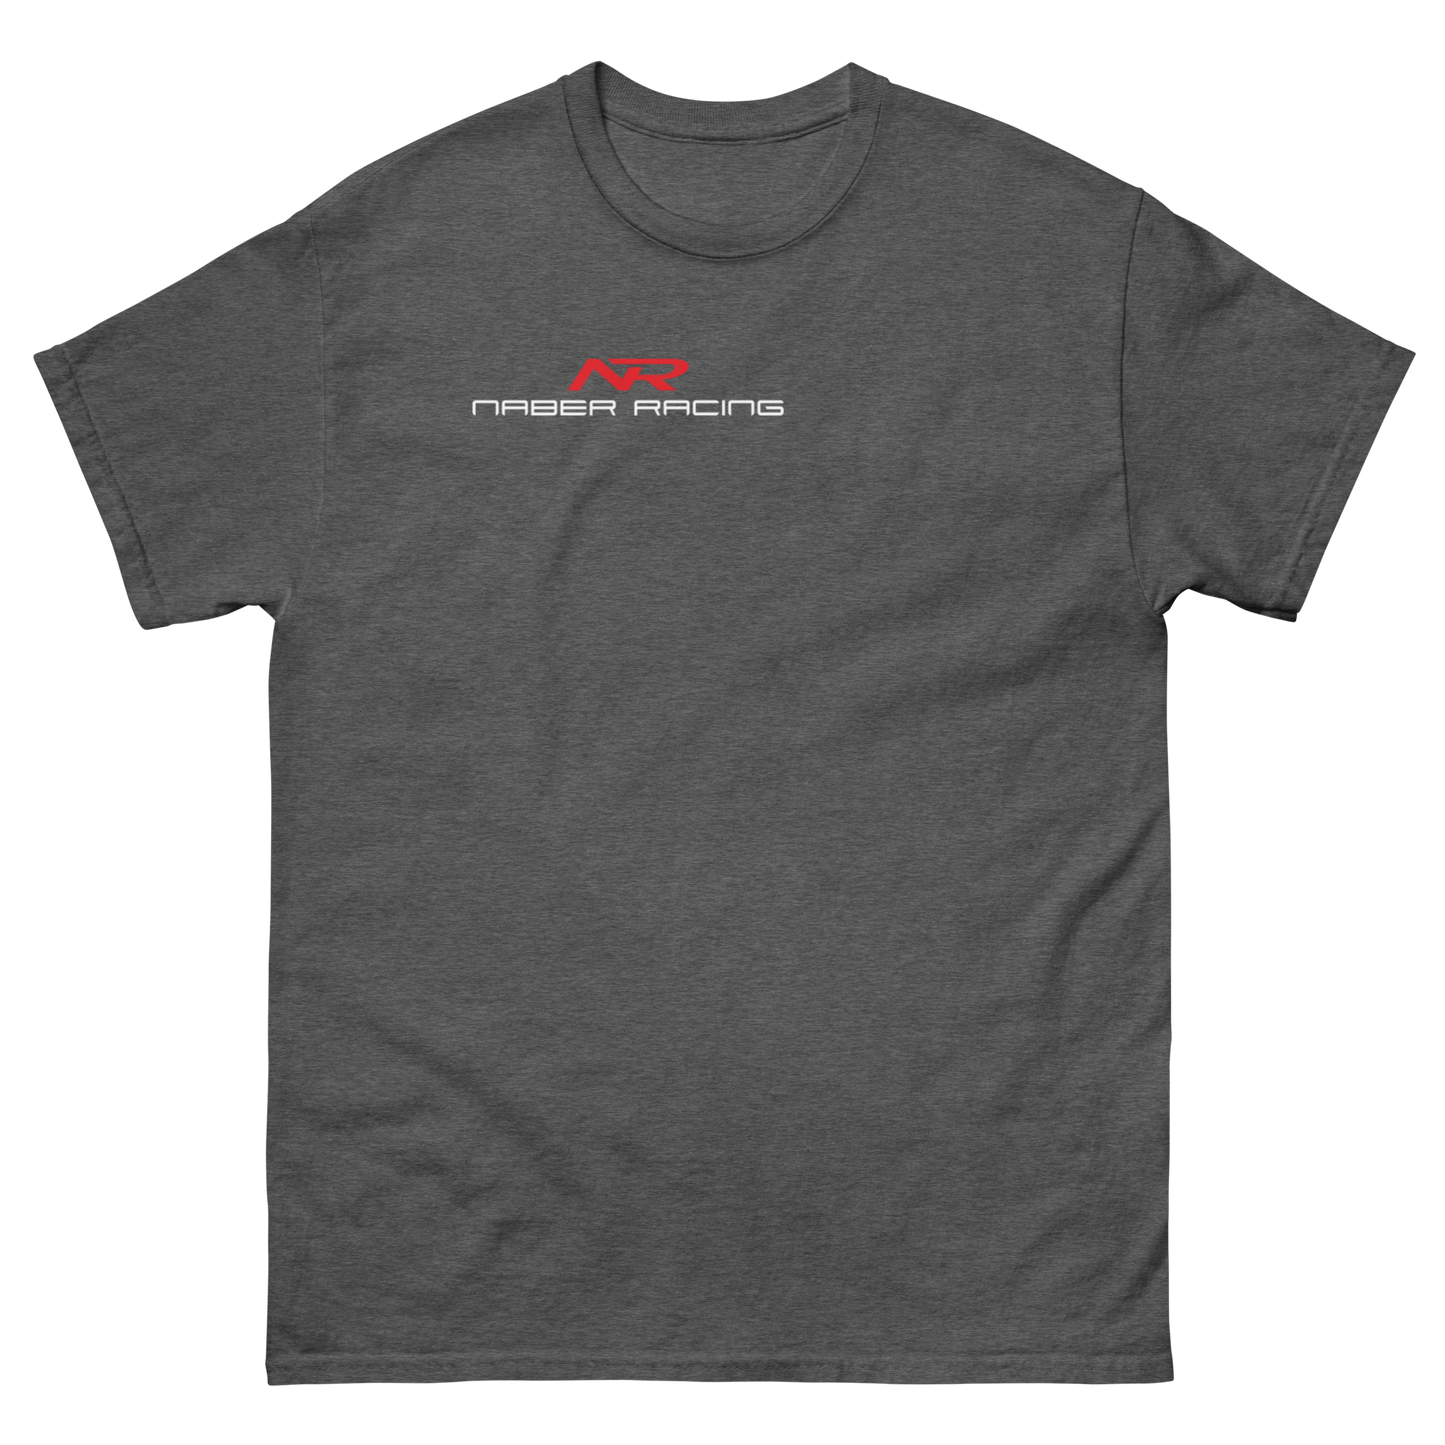 Naber Racing unisex tshirt